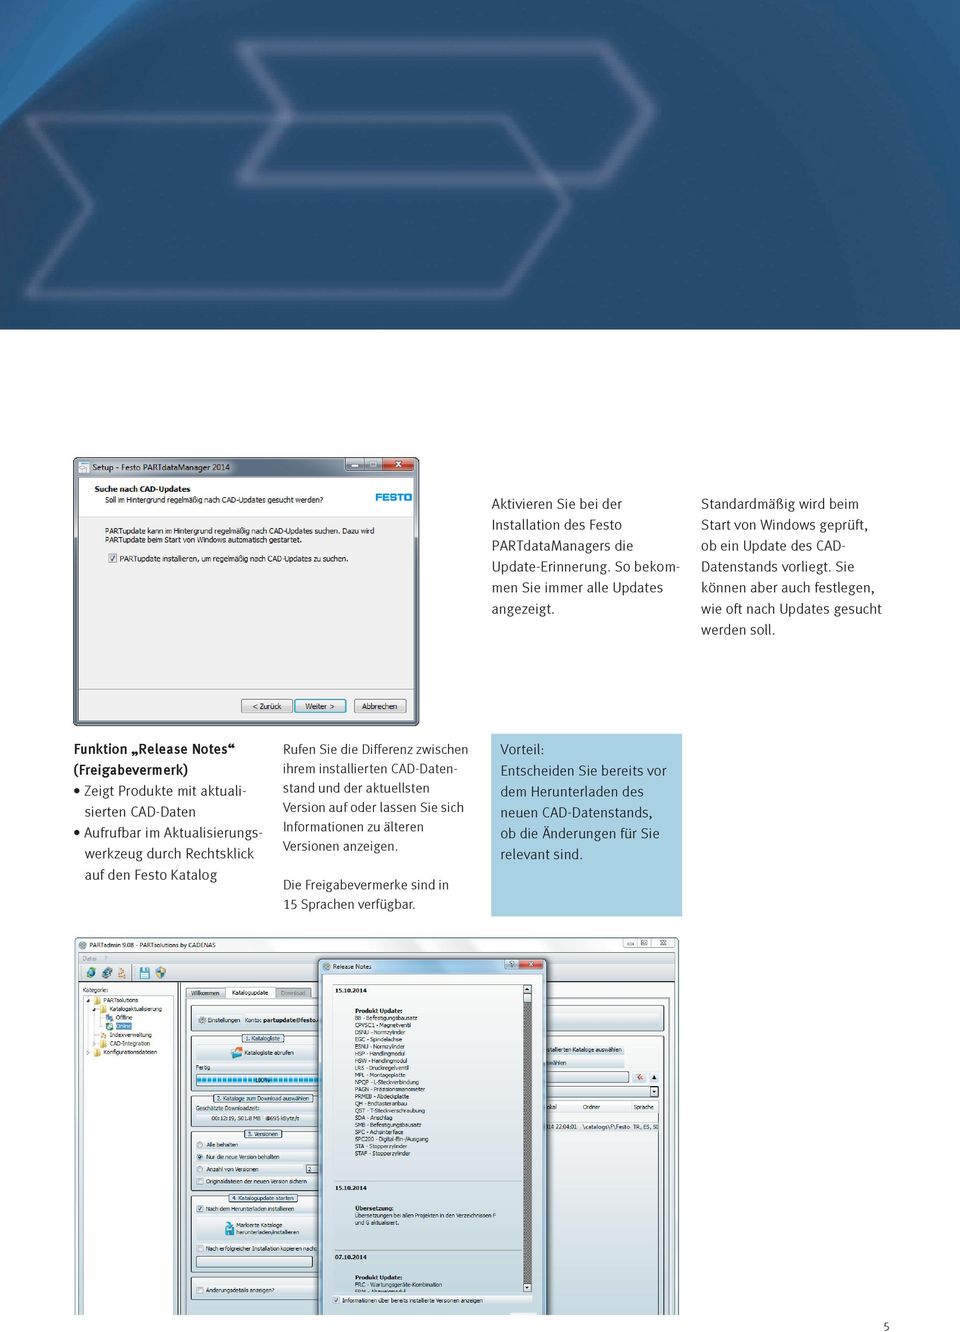 Funktion Release Notes (Freigabevermerk) Zeigt Produkte mit aktualisierten CAD-Daten Aufrufbar im Aktualisierungswerkzeug durch Rechtsklick auf den Festo Katalog Rufen Sie die Differenz zwischen